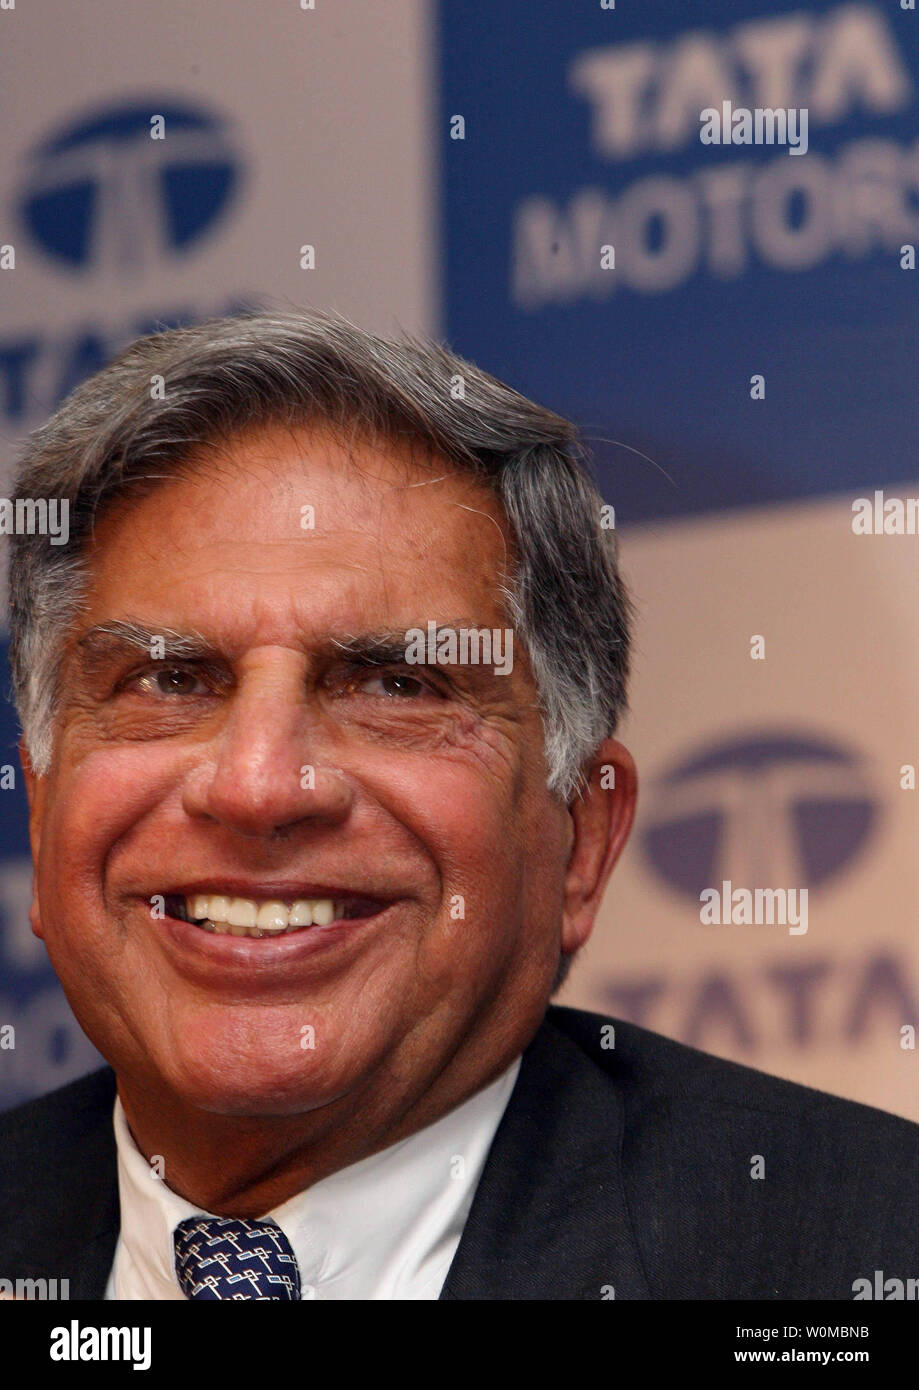 Tata Firma Vorsitzender Ratan Tata kündigt den neuen Tata Nano für das 9. Auto Expo in New Delhi, Indien, Donnerstag, 10. Januar 2008. Die indische Tata Motors stellte seine uns erwartete $ 2.500 Auto, eine ultracheap Preis, bringt Auto Besitz in die Hände von Millionen von Menschen auf der ganzen Welt. Tata behauptet, dass der Nano, das billigste Auto der Welt ist. (UPI Foto) Stockfoto